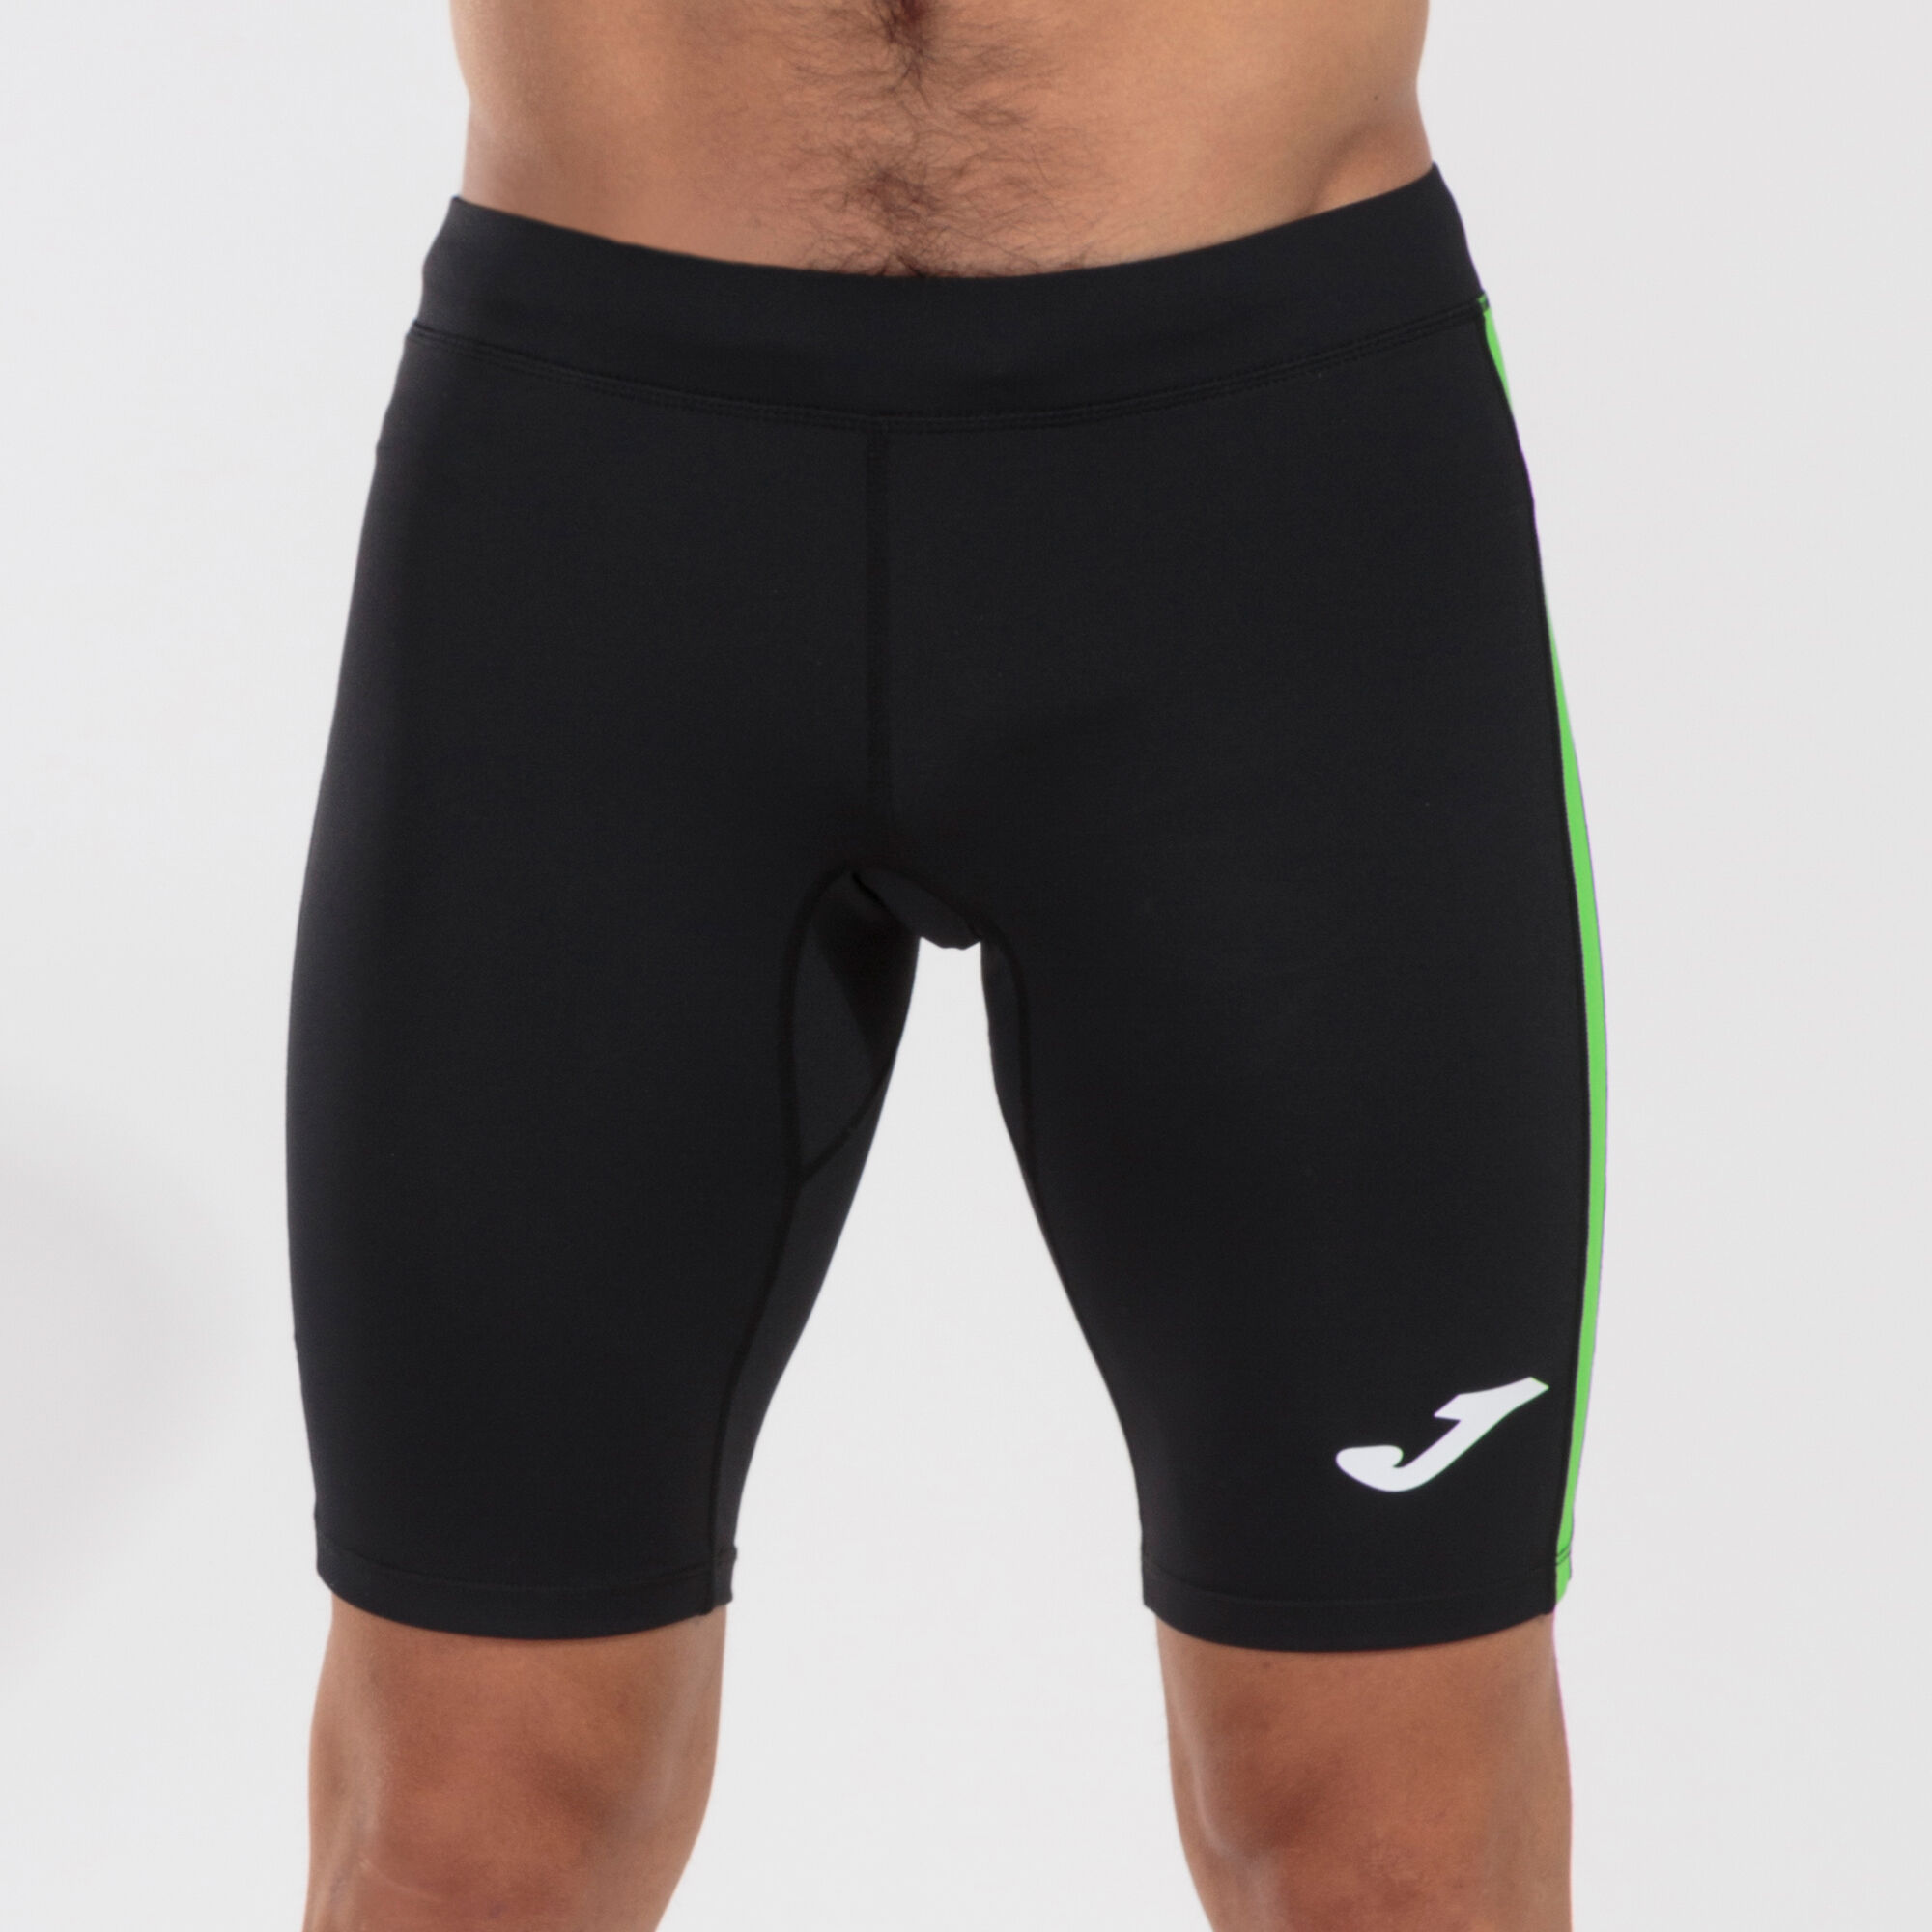 Pantaloncini aderenti uomo Elite VII nero verde fluorescente